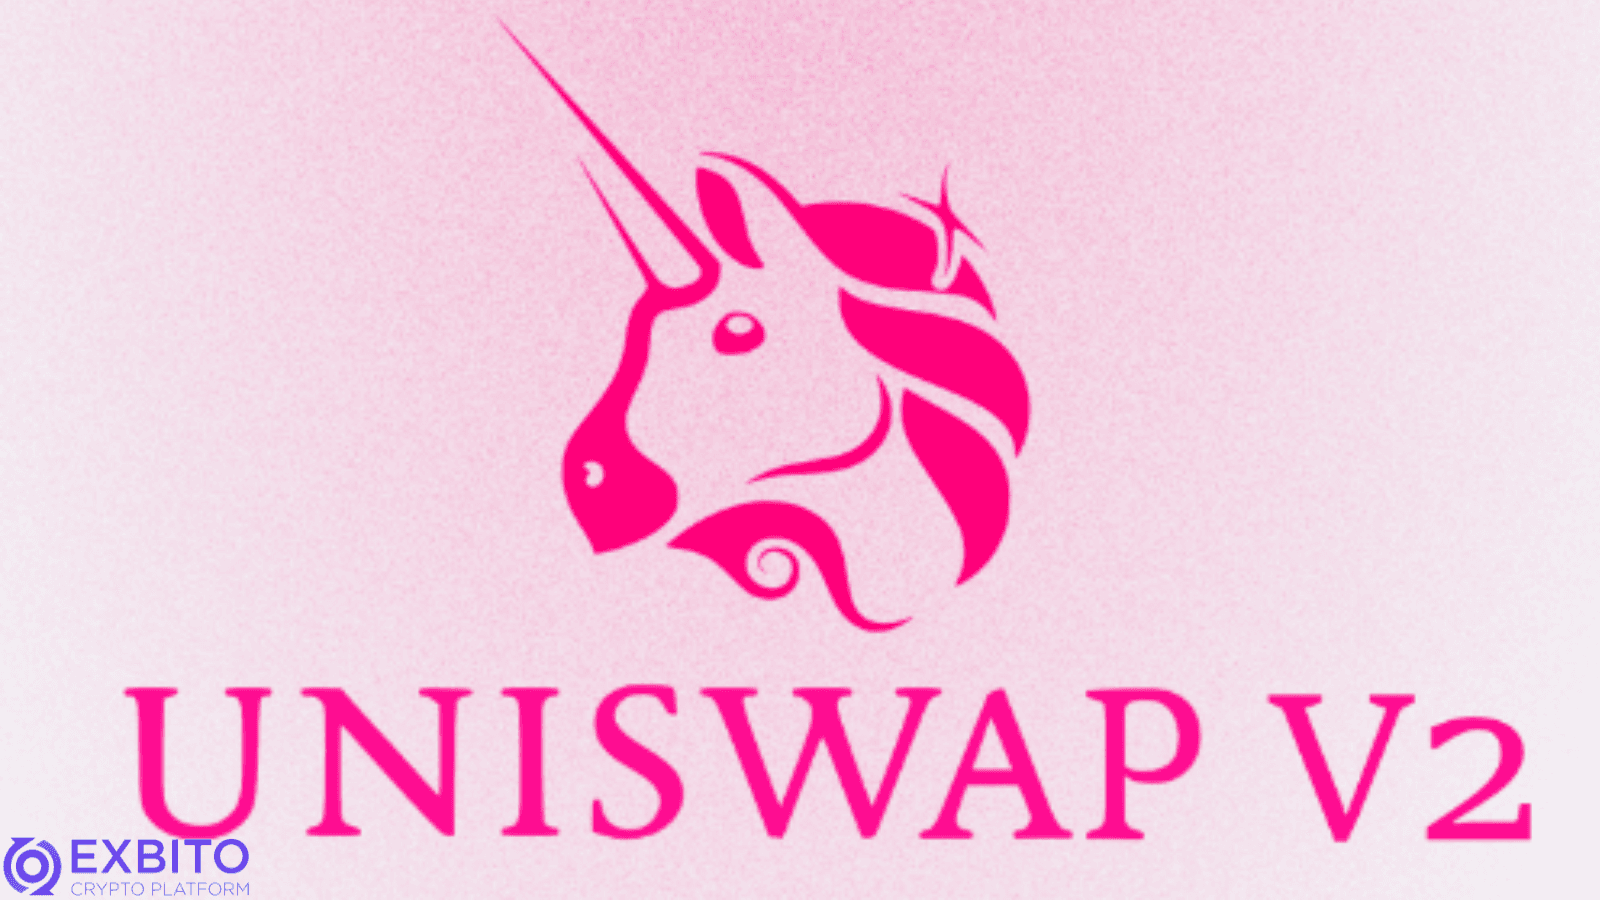 یونی سواپ نسخه دوم (Uniswap V2)